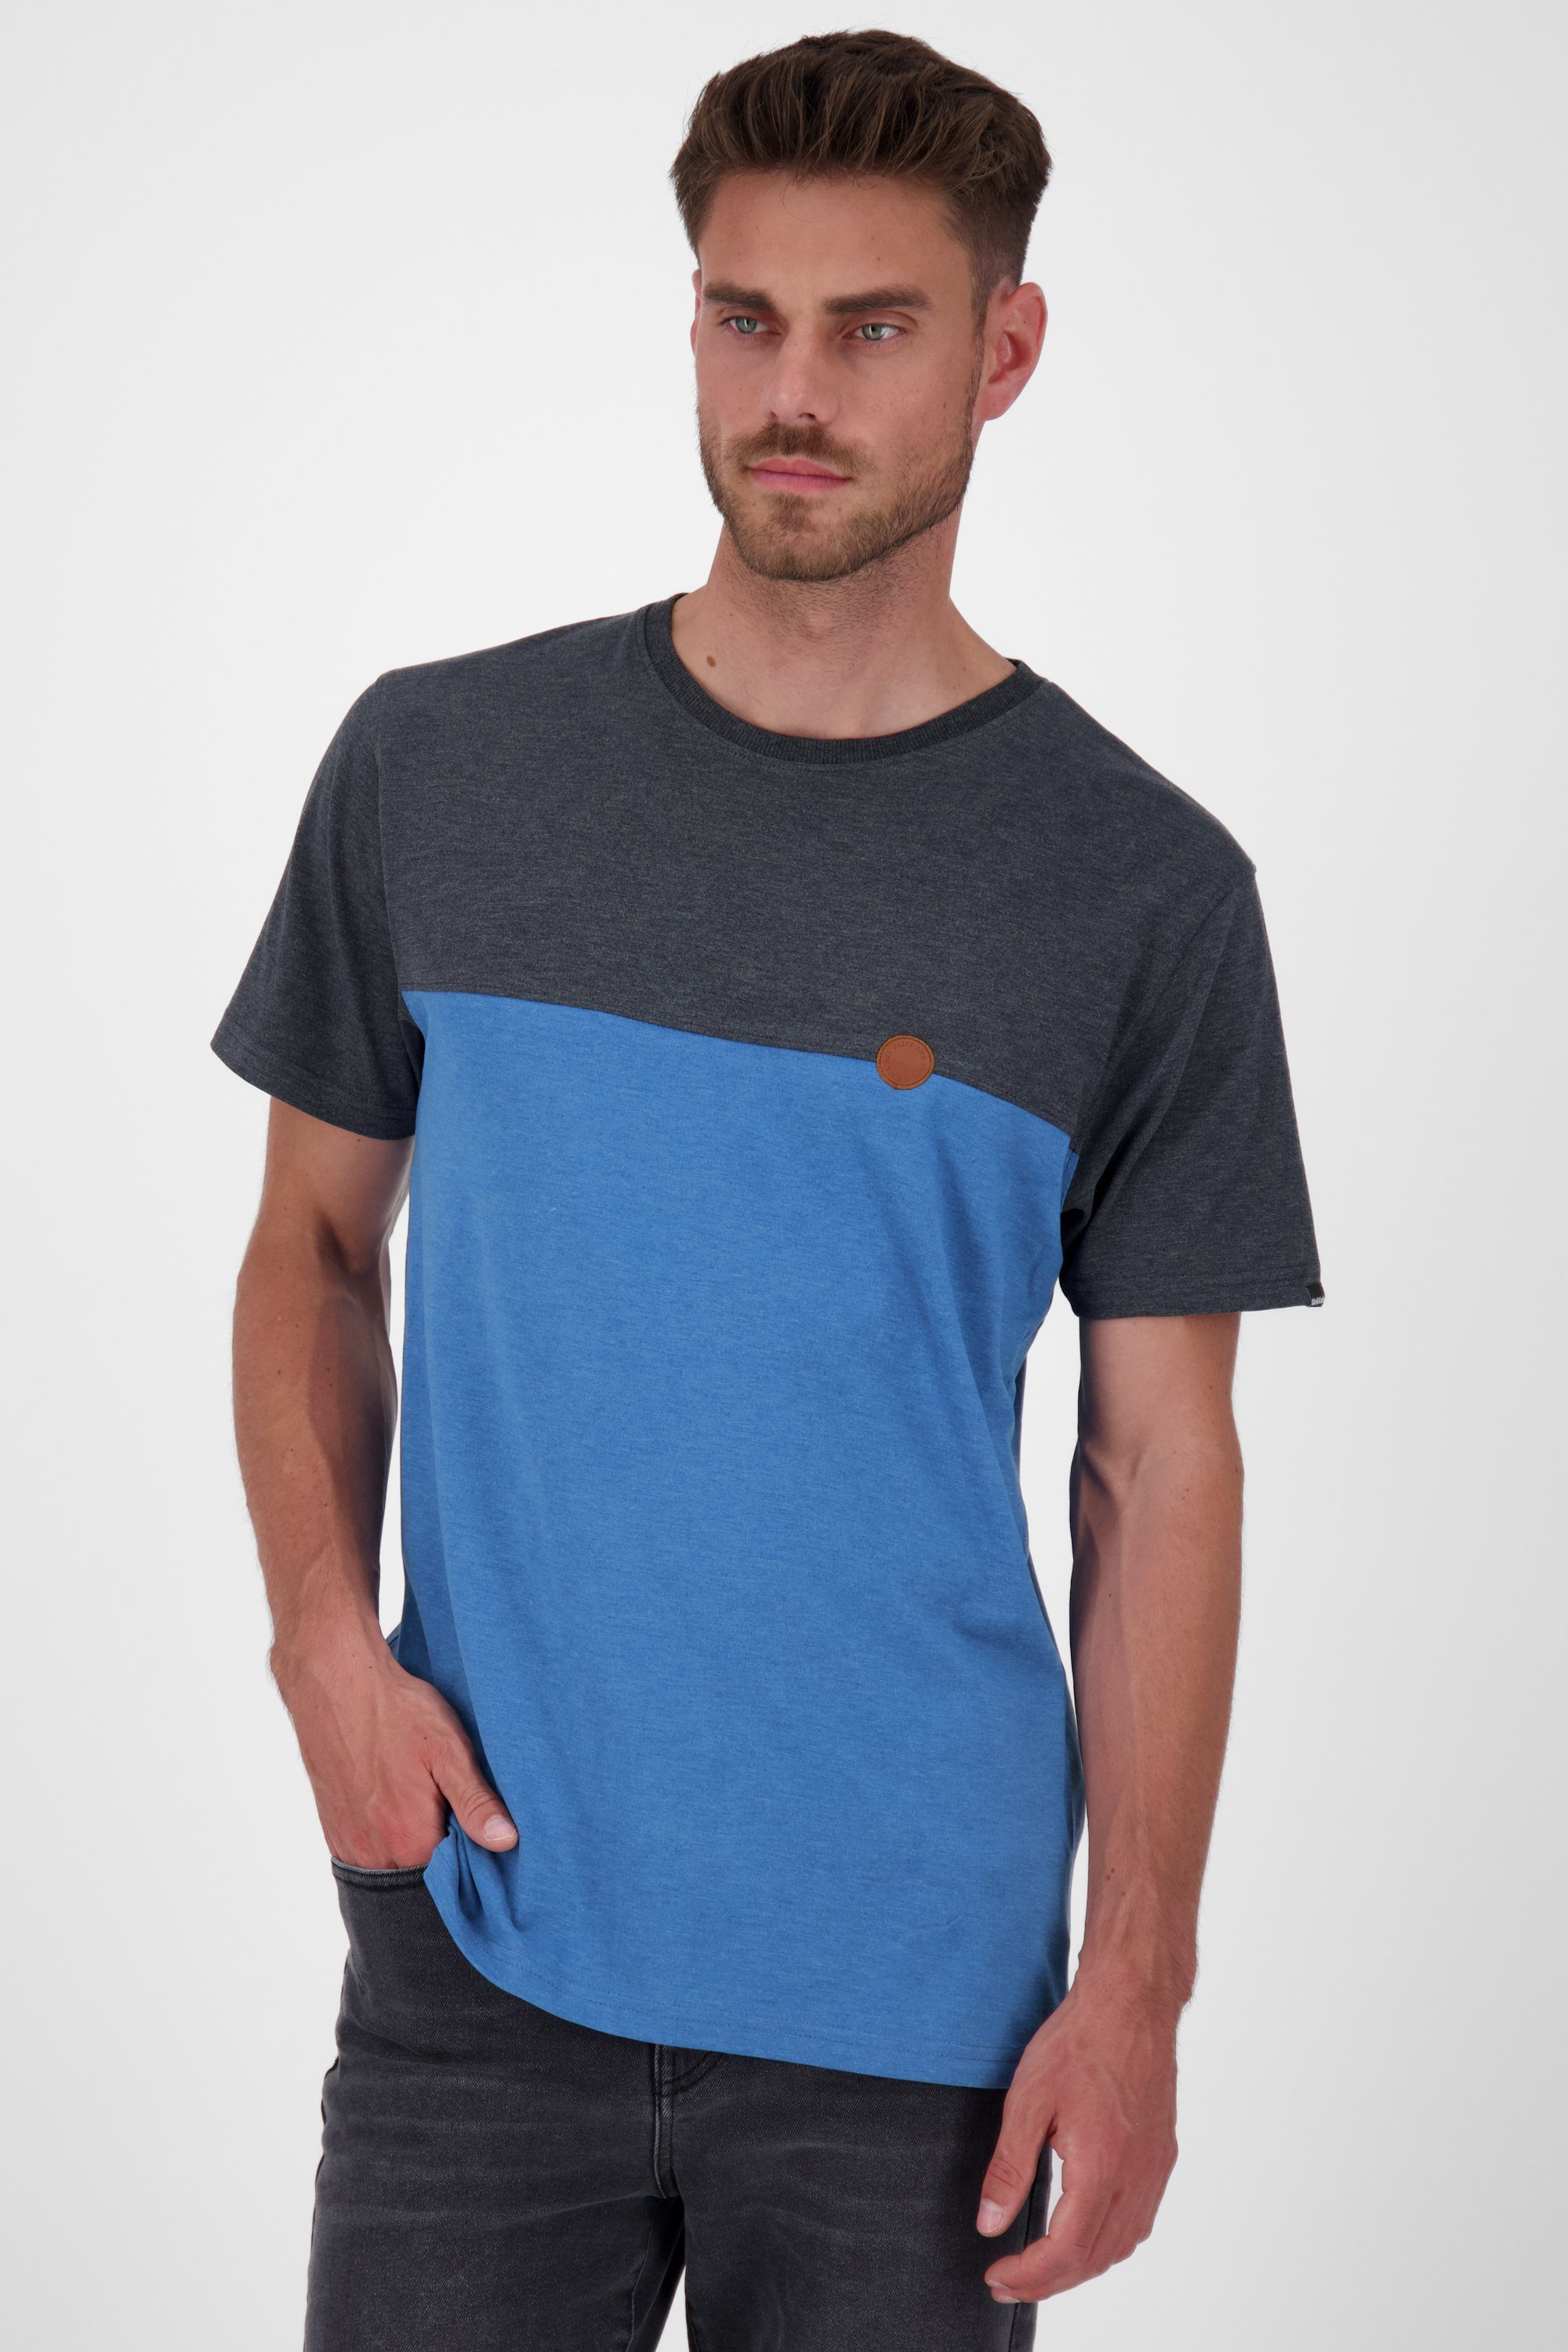 Alife & Kickin T-Shirt Shirt A indigo T-Shirt Herren LeoAK